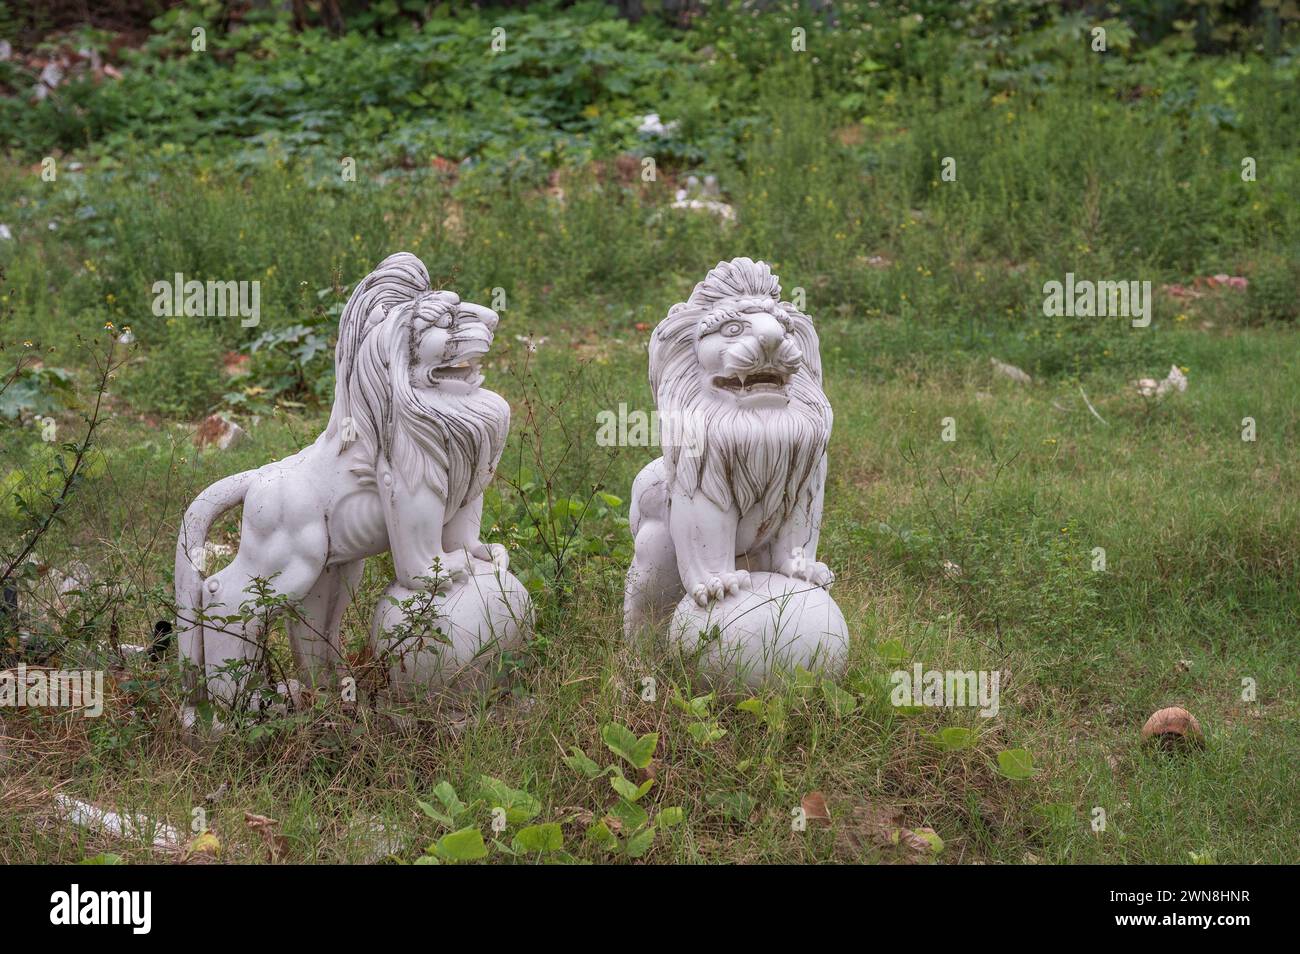 Statues de deux Lions gardiens chinois, ou Lions gardiens impériaux. Les statues sont posées dans un champ sauvage et abandonné. Banque D'Images